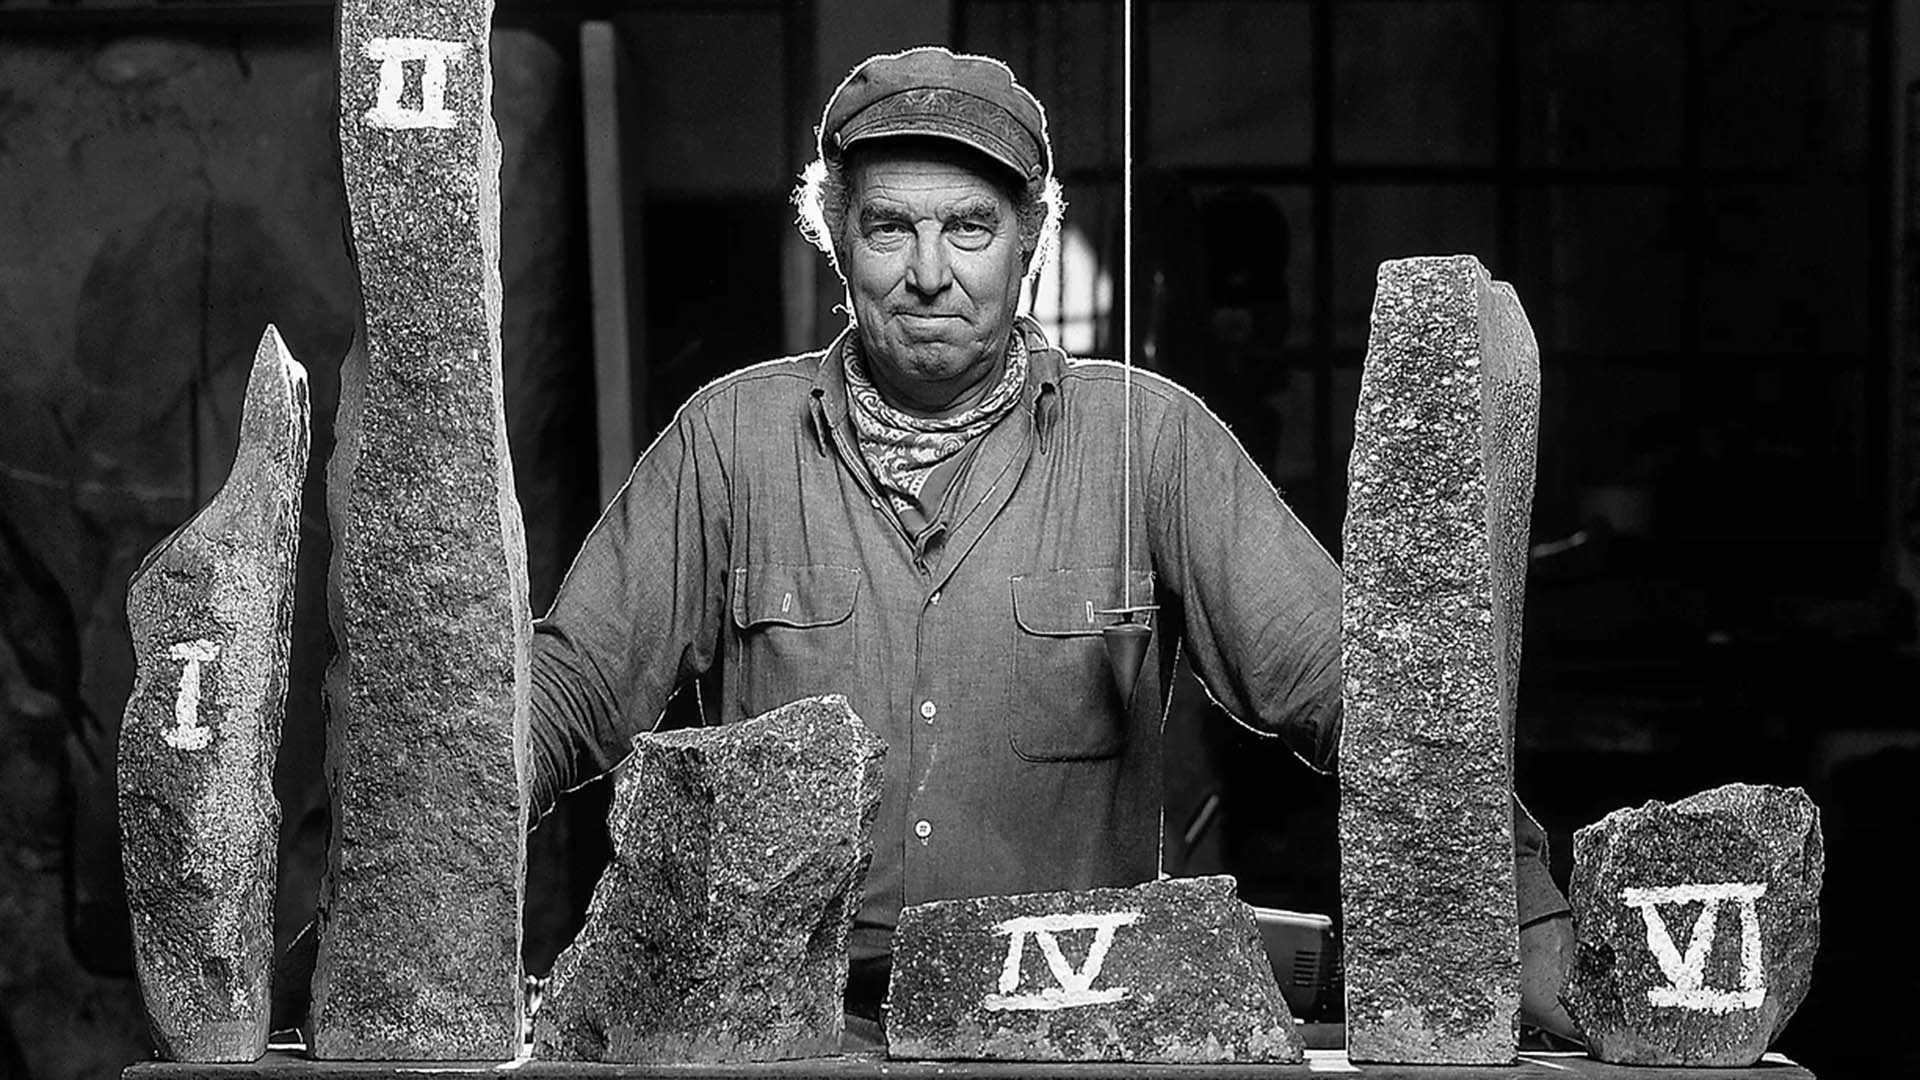 La vida y obra del escultor Jorge Michel se presenta en el BAFICI